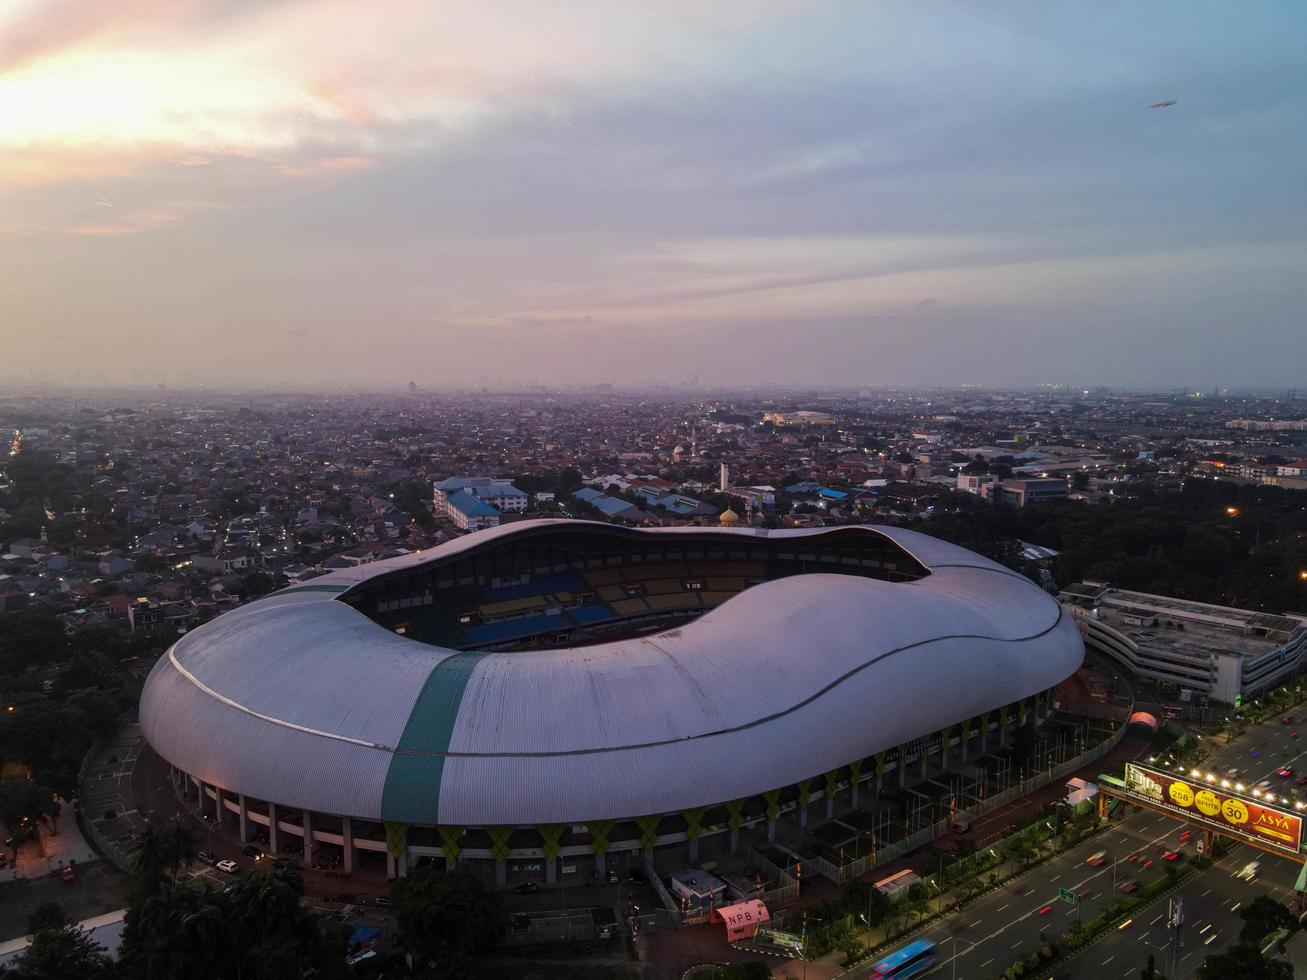 Bekasi, Indonesia 2021- Vista aérea del estadio más grande de Bekasi desde un dron con puesta de sol y nubes foto